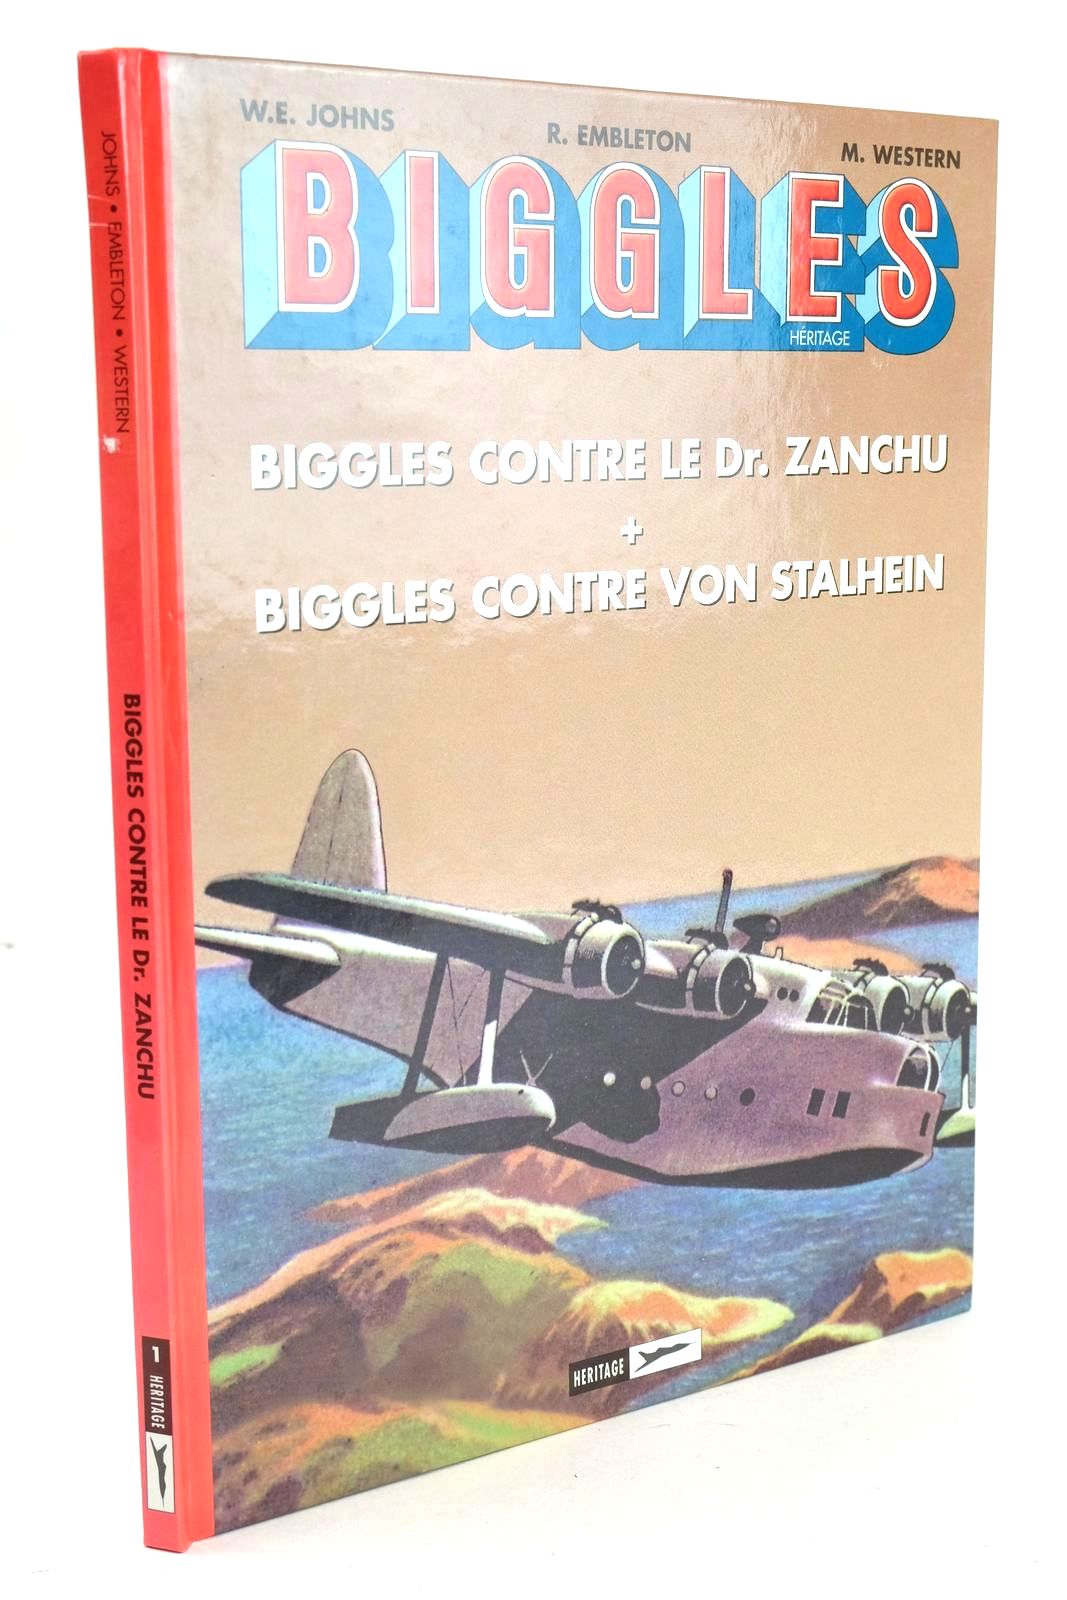 Photo of BIGGLES HERITAGE 1 - BIGGLES CONTRE LE DR. ZANCHU + BIGGLES CONTRE VON STALHEIN- Stock Number: 1326324